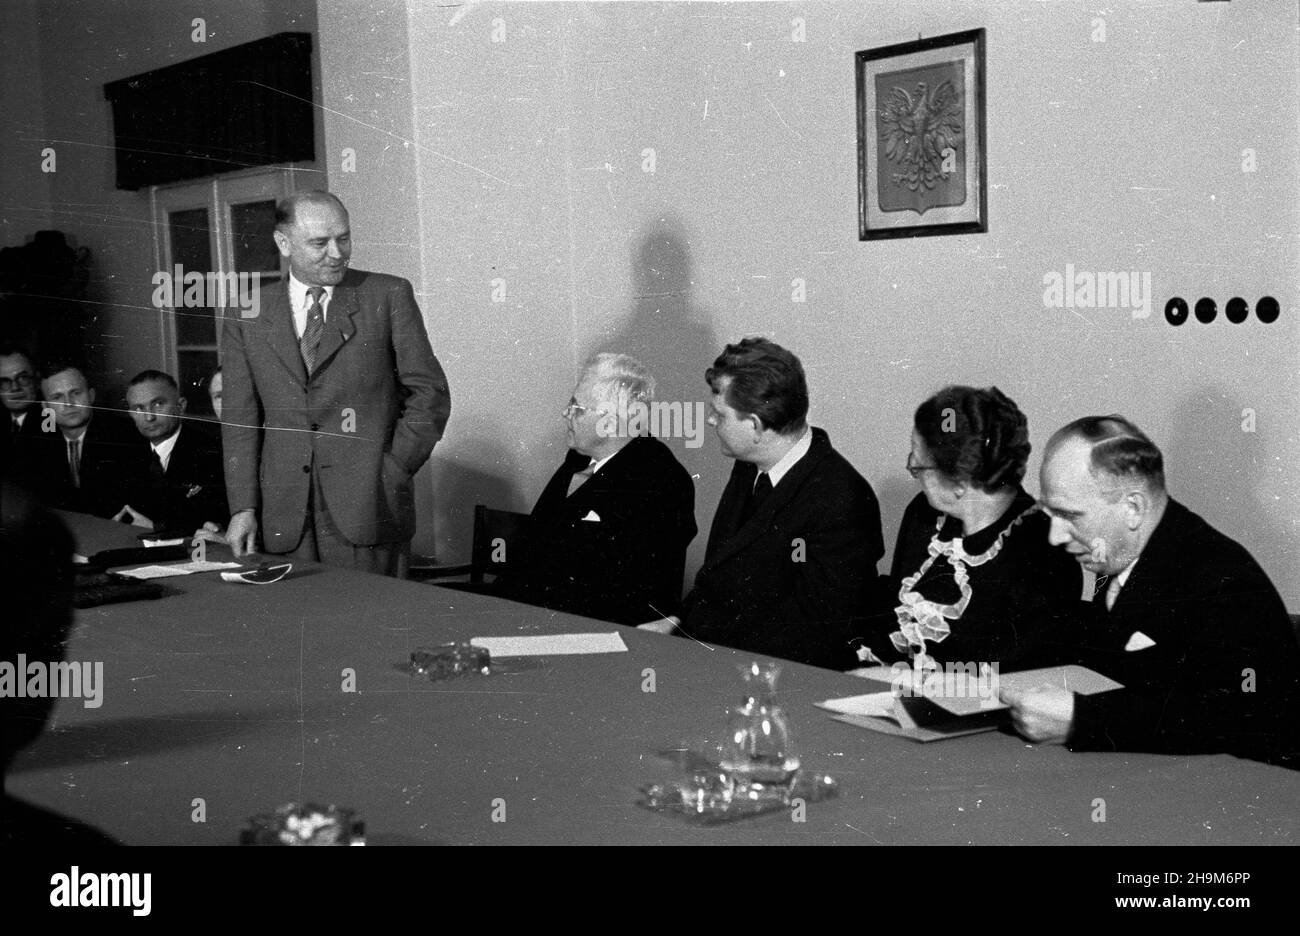 Warszawa, 1948-09-02. Podpisanie przez Polskê i Czechos³owacjê umowy pocztowo-telegraficznej. Nz. m.in.: minister poczt i telegrafów prof. Wac³aw Szymanowski (4P), czeski minister poczt dr Alois Neuman (5P). ka  PAP      Warsaw, Sept. 2, 1948. Poland and Czechoslovakia sign an agreement on posts and telegraphs. Pictured: Post and Telegraphs Minister Professor Waclaw Szymanowski (4th right), Czech Post Minister Alois Neuman (5th right).  ka  PAP Stock Photo